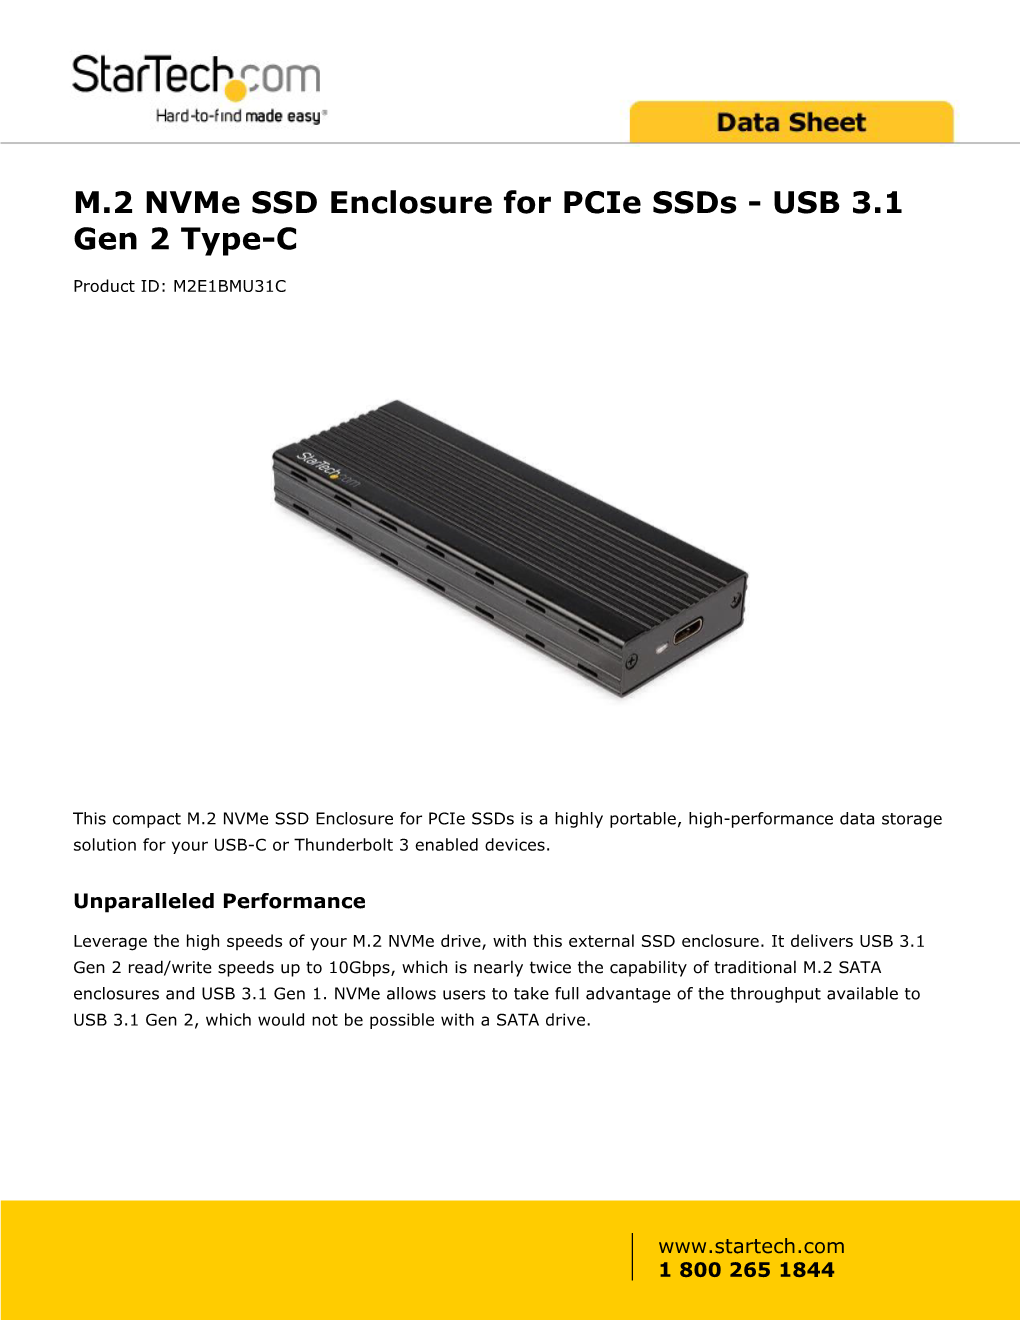 M.2 Nvme SSD Enclosure | Pcie Ssds | USB 3.1 Gen 2 Type-C